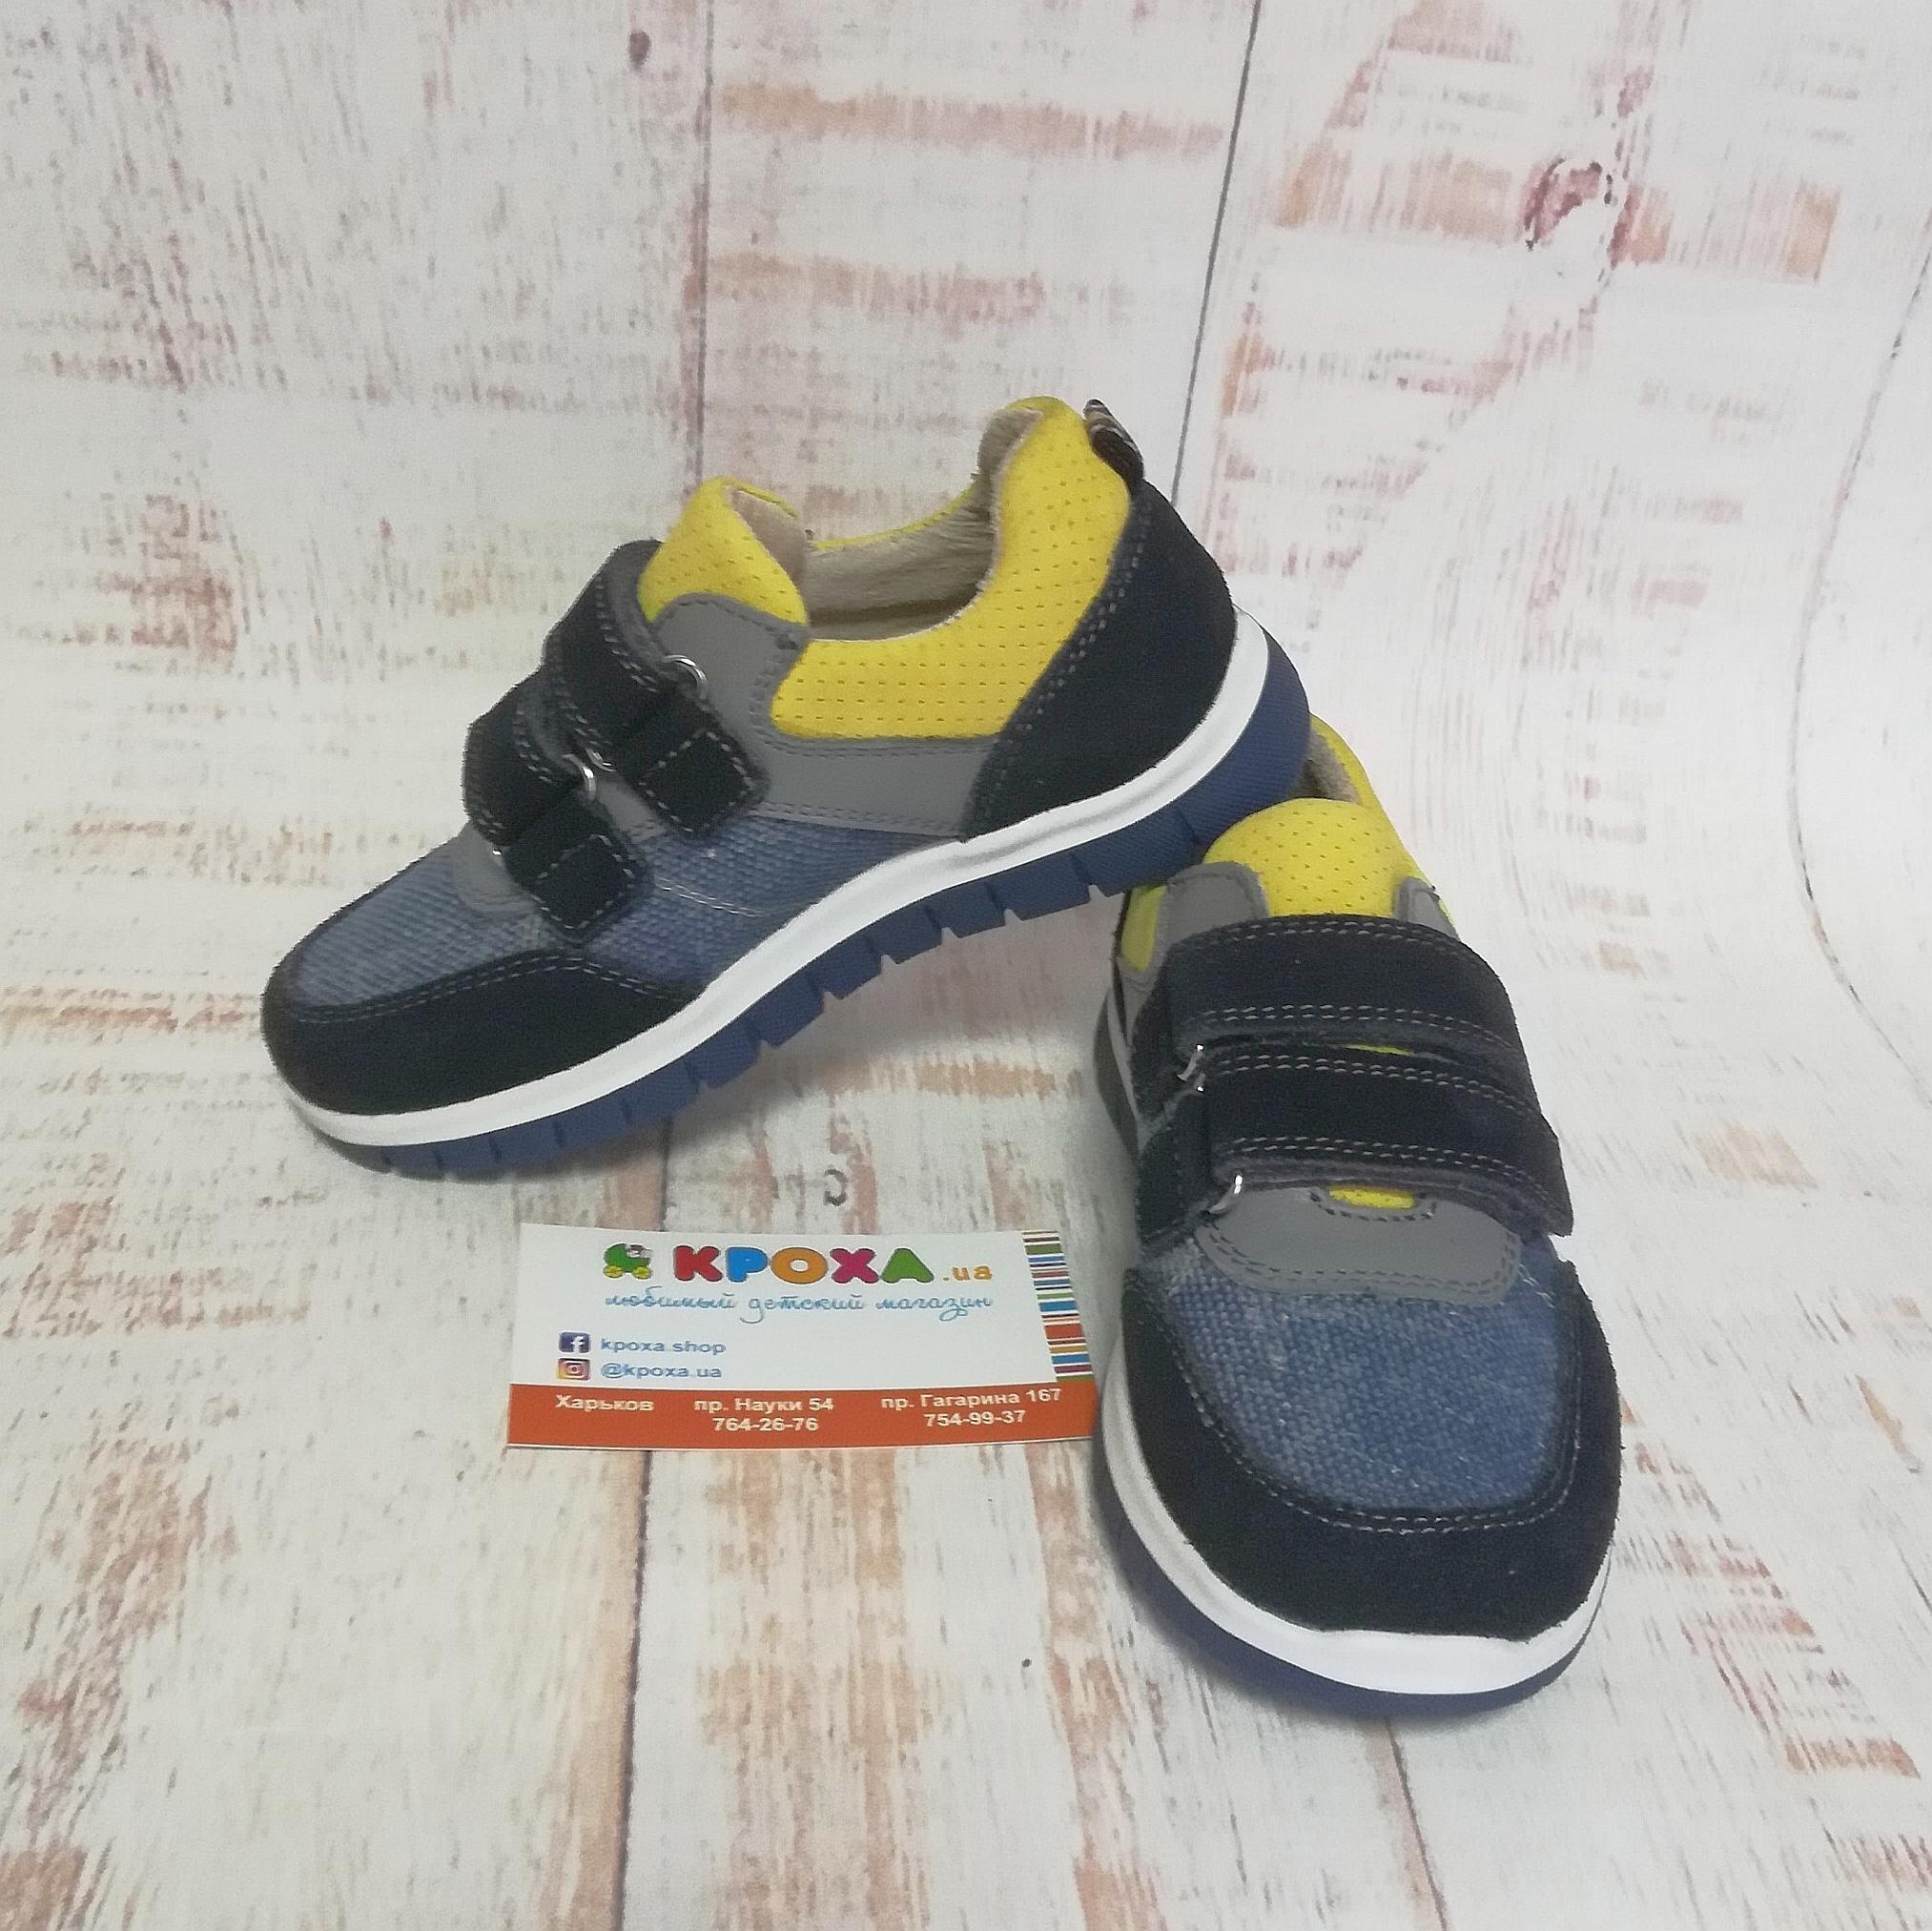 Дитячі кросівки для хлопчика (97112/300/45, 99112/300/45), Bistfor